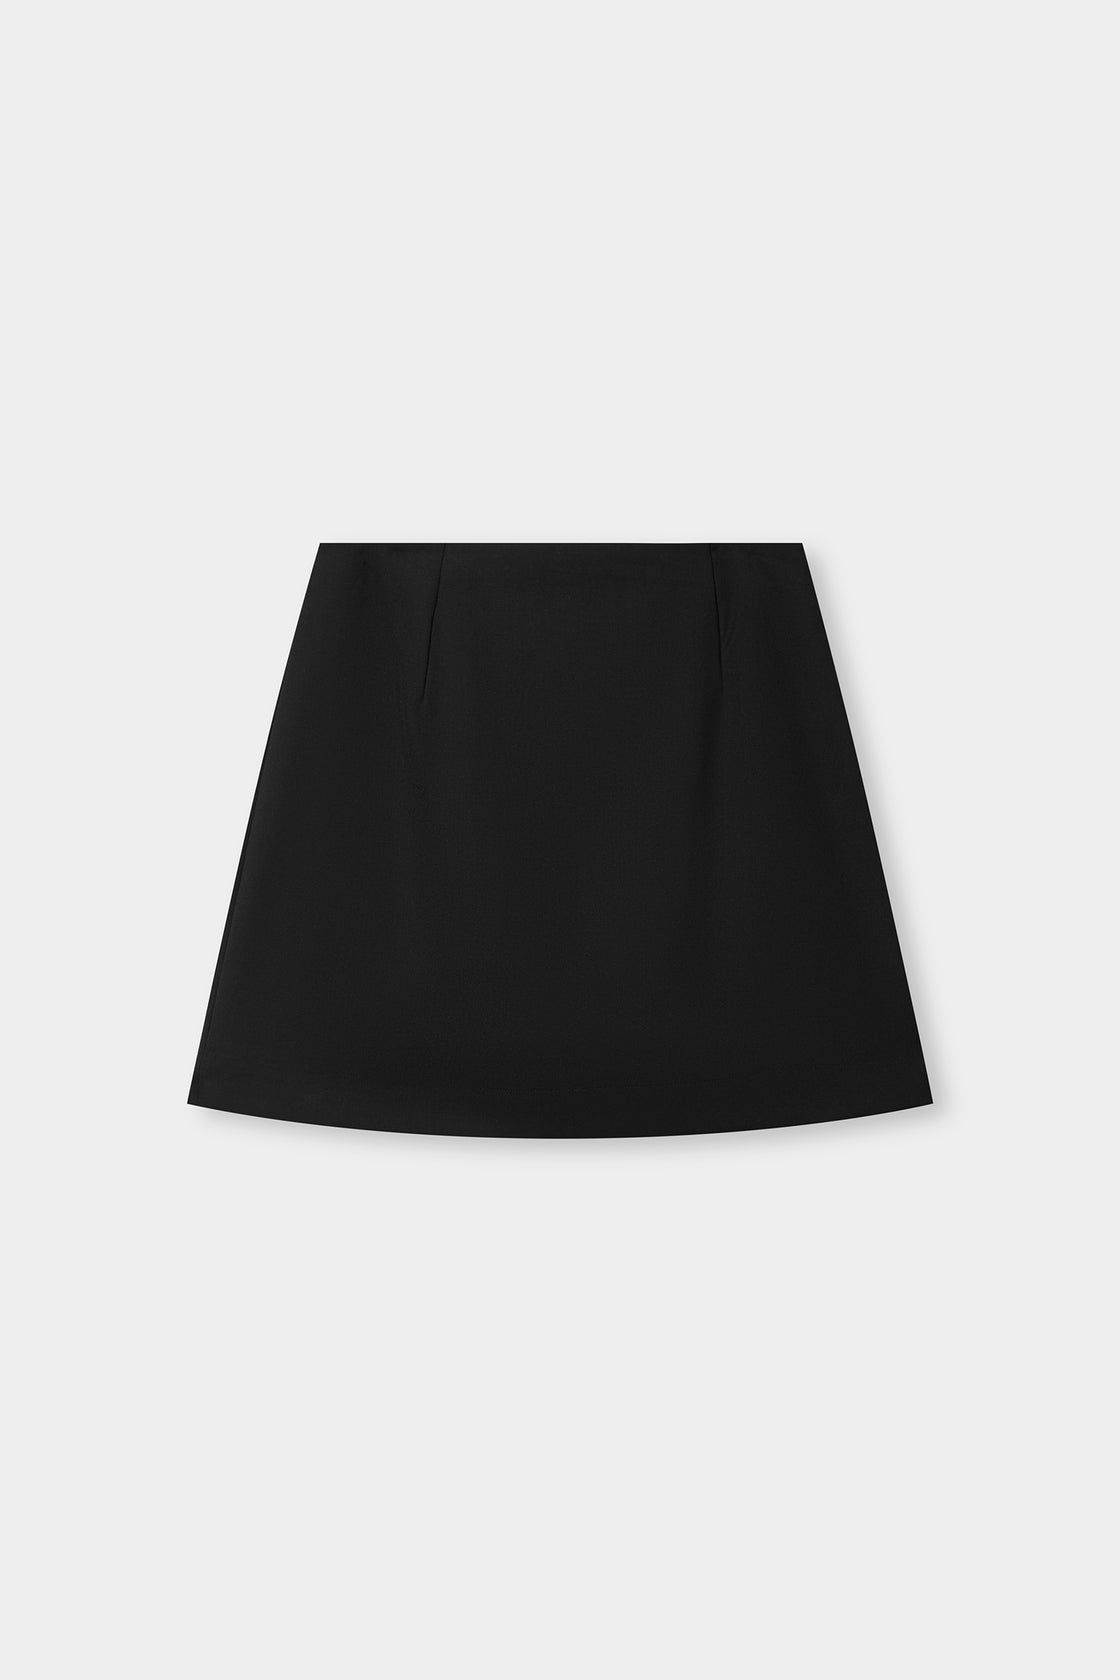 Maeve Skirt -Black